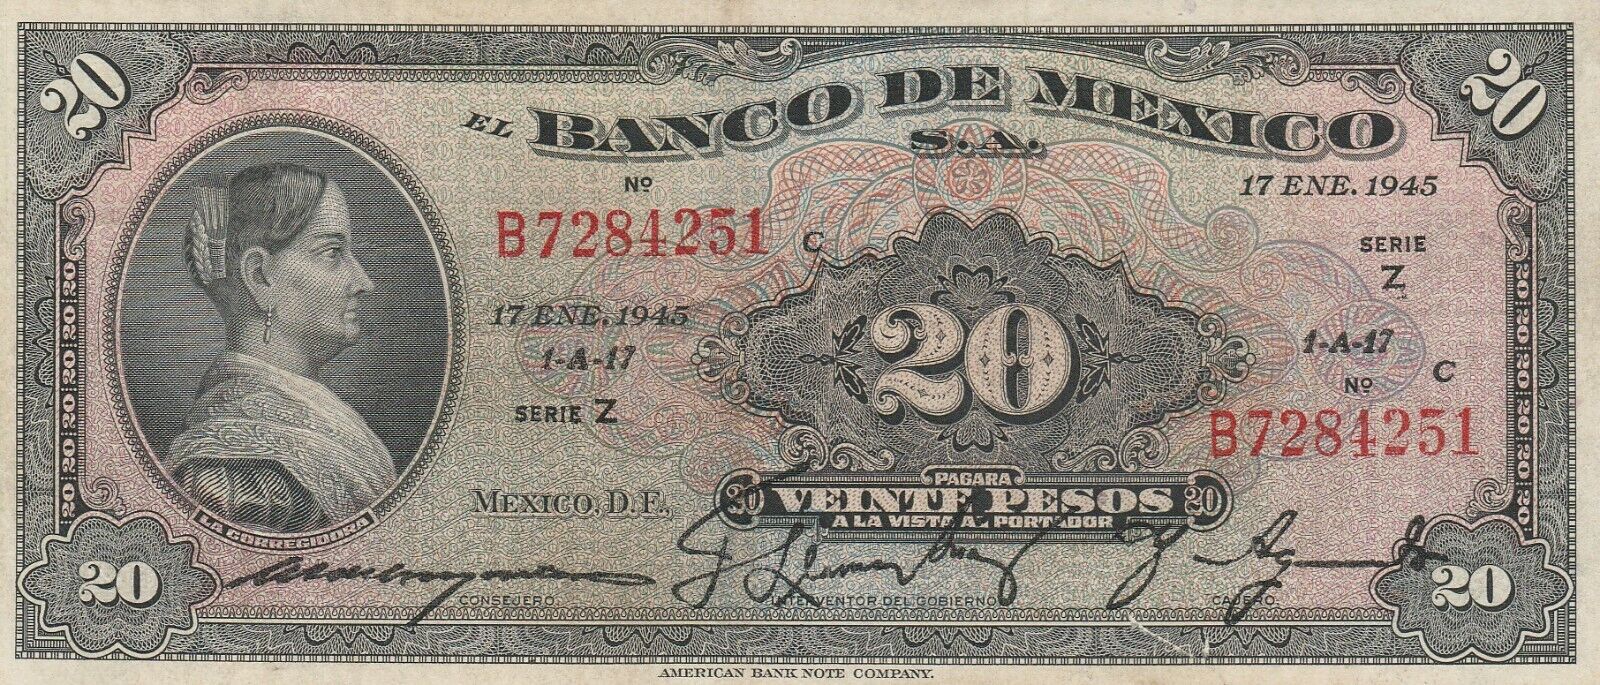 Mexico:  Pesos La Corregidora Jan 17, 1945 El Banco de Mexico